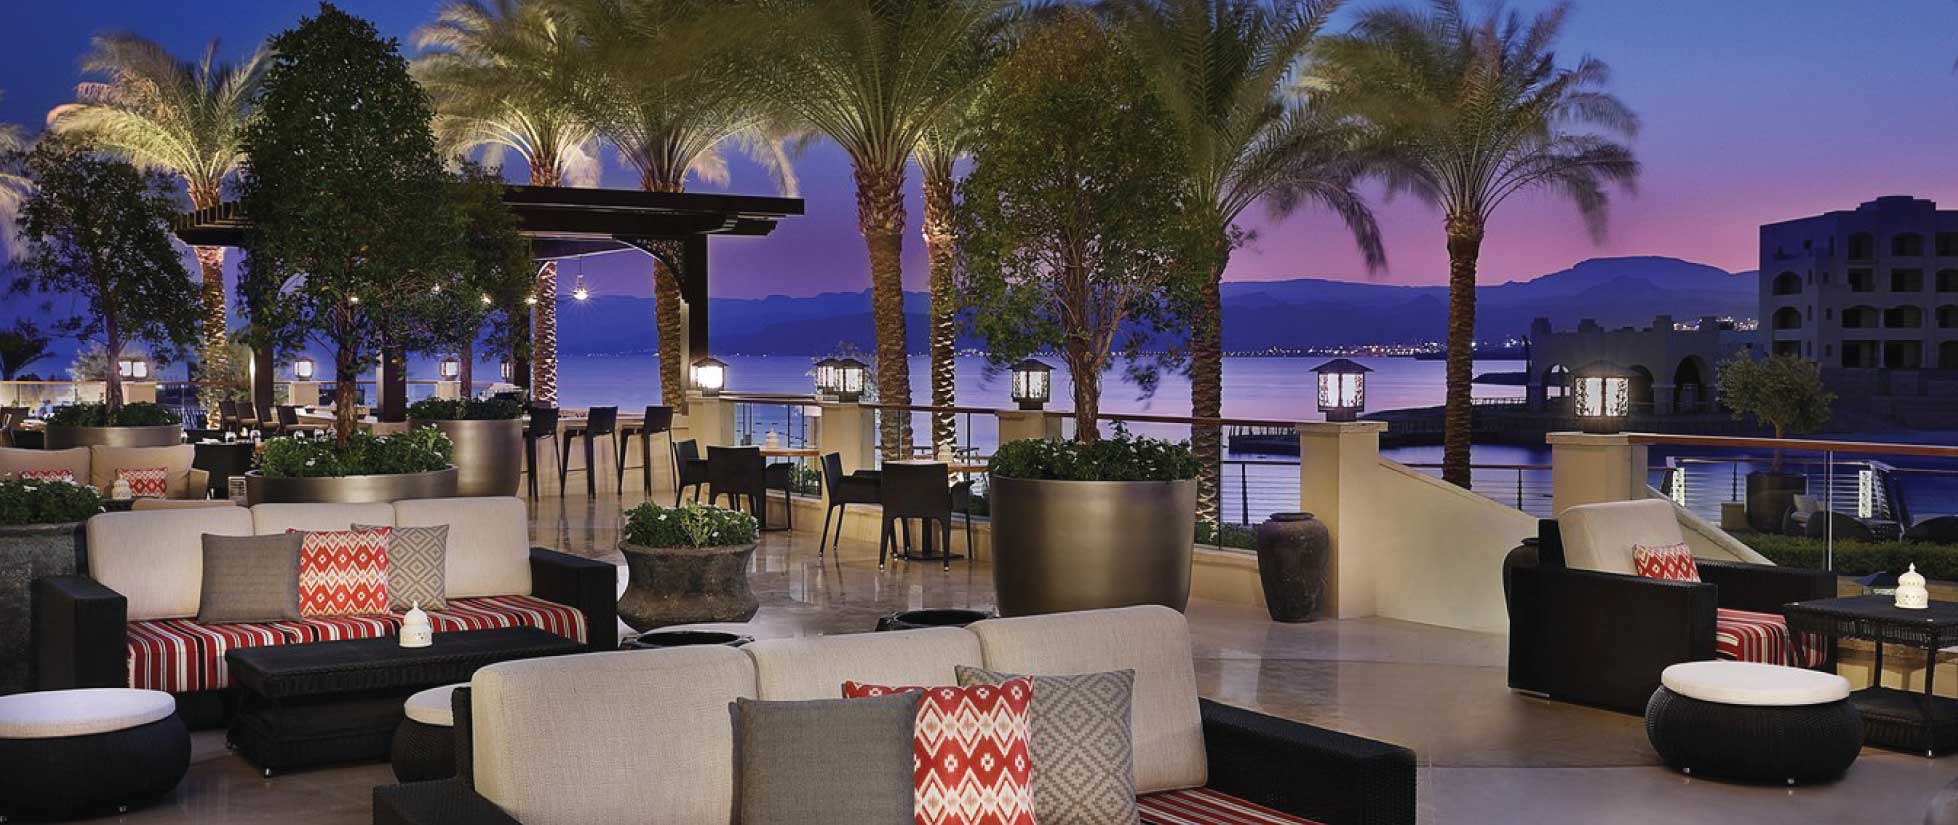 Al Manara Hotel (Marriott), Saraya Aqaba